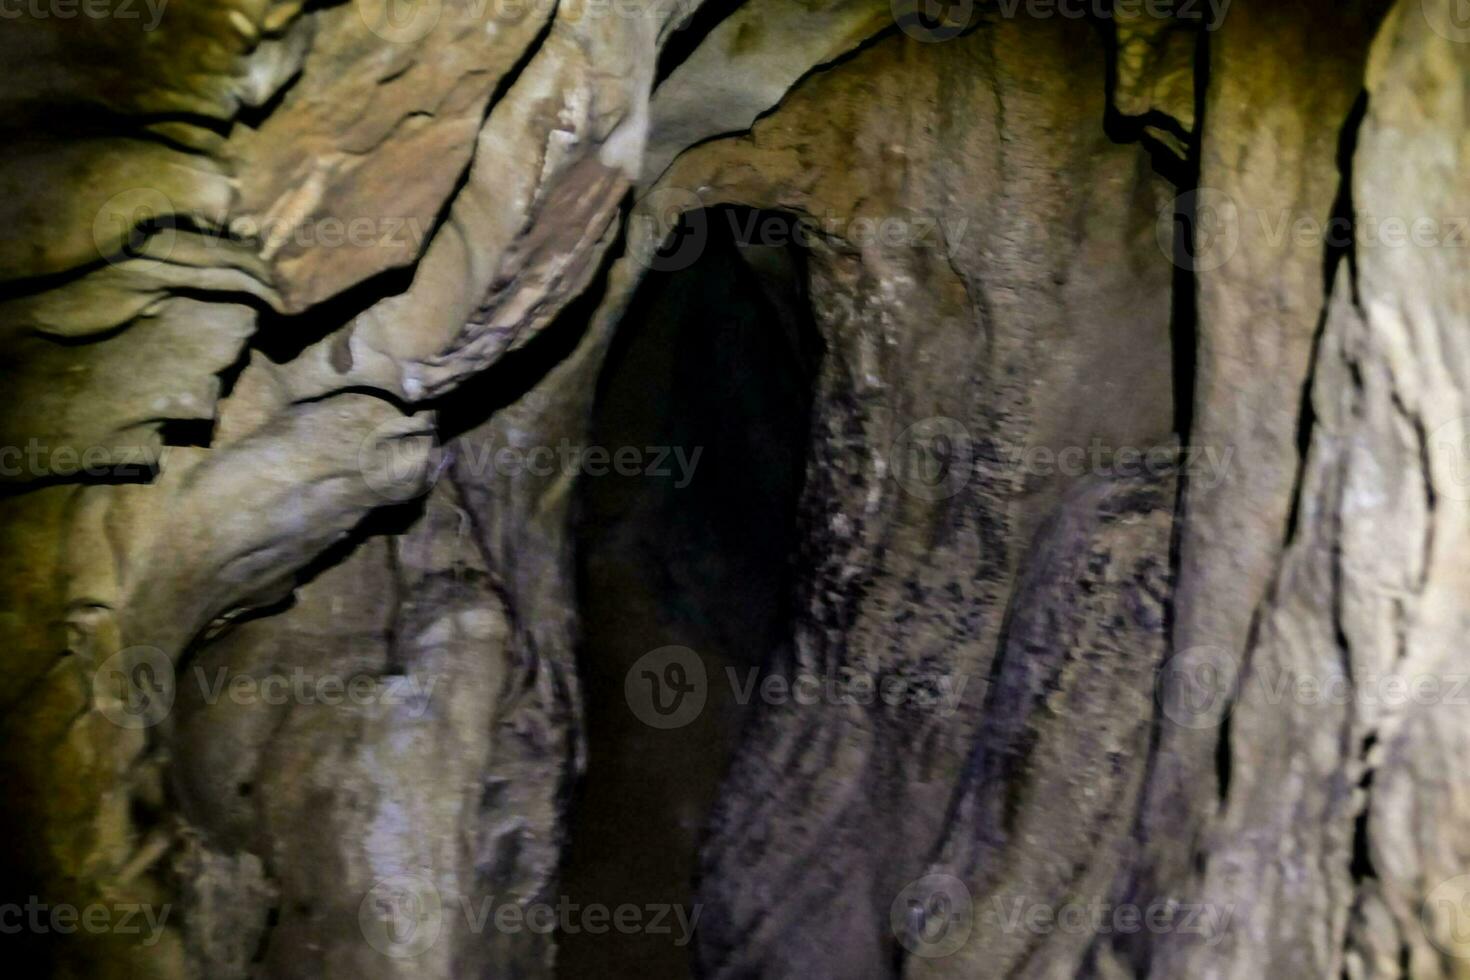 inuti en grotta foto